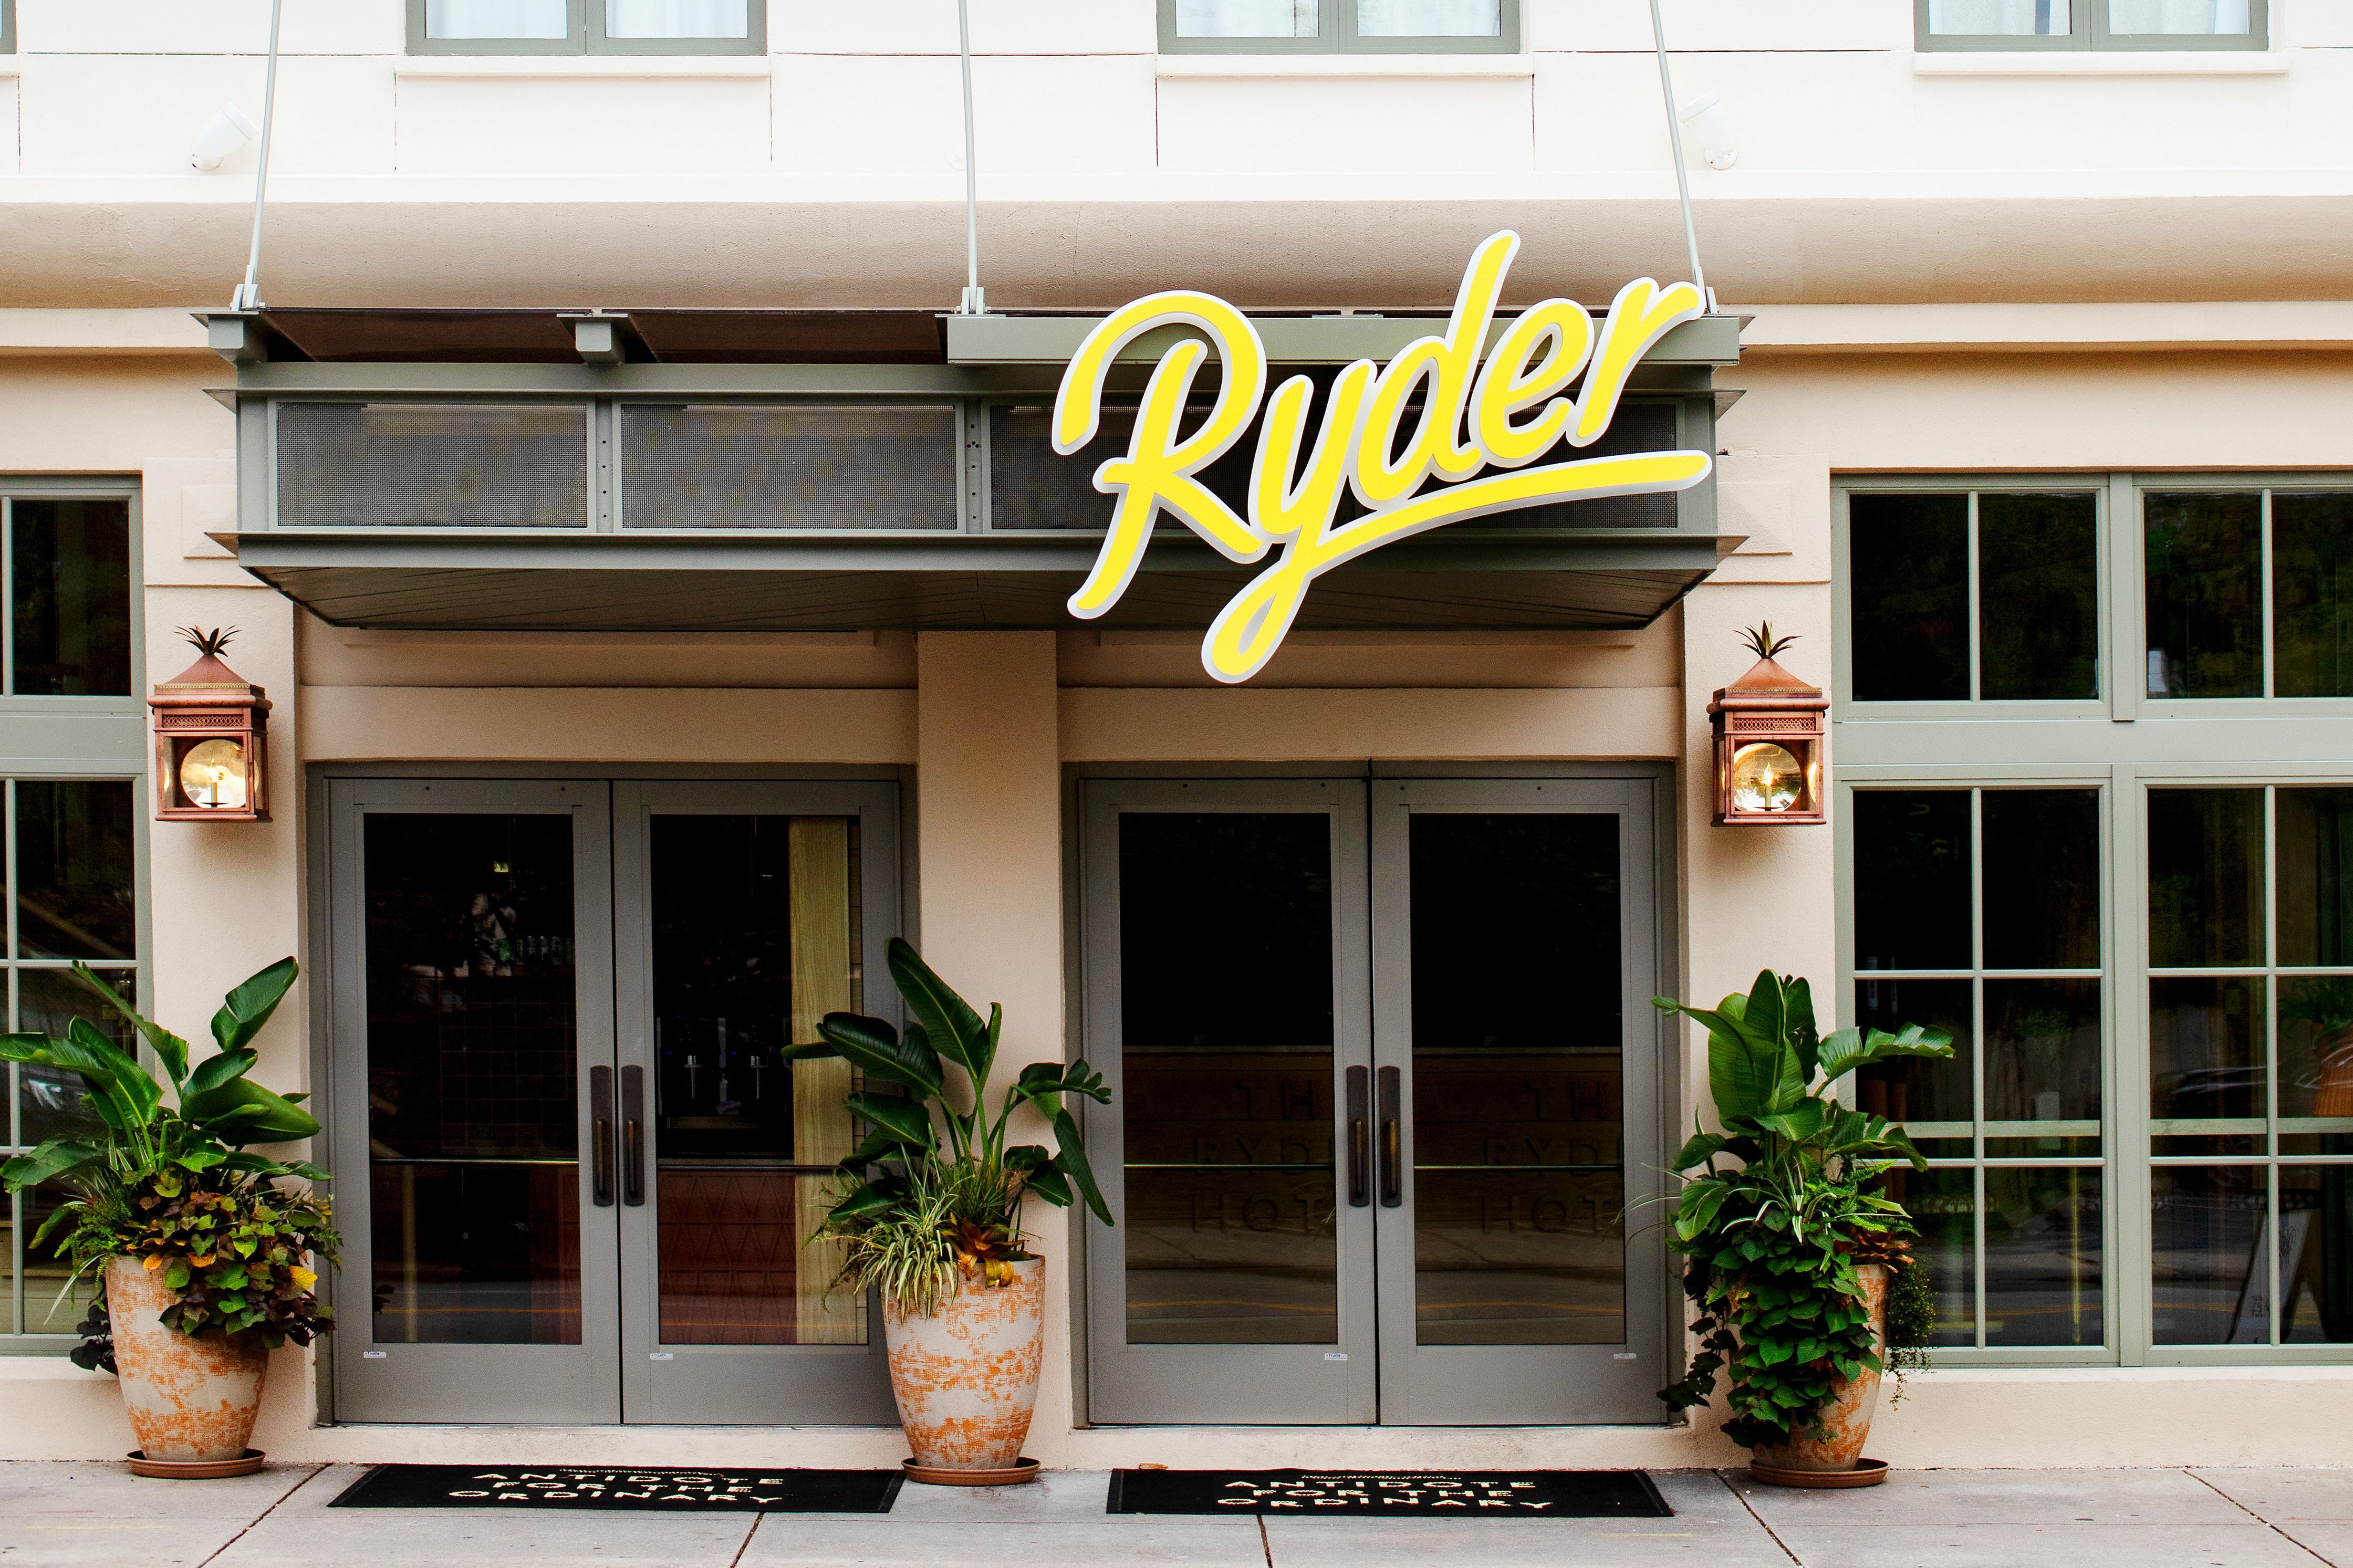 Photo of The Ryder Hotel, Charleston, SC